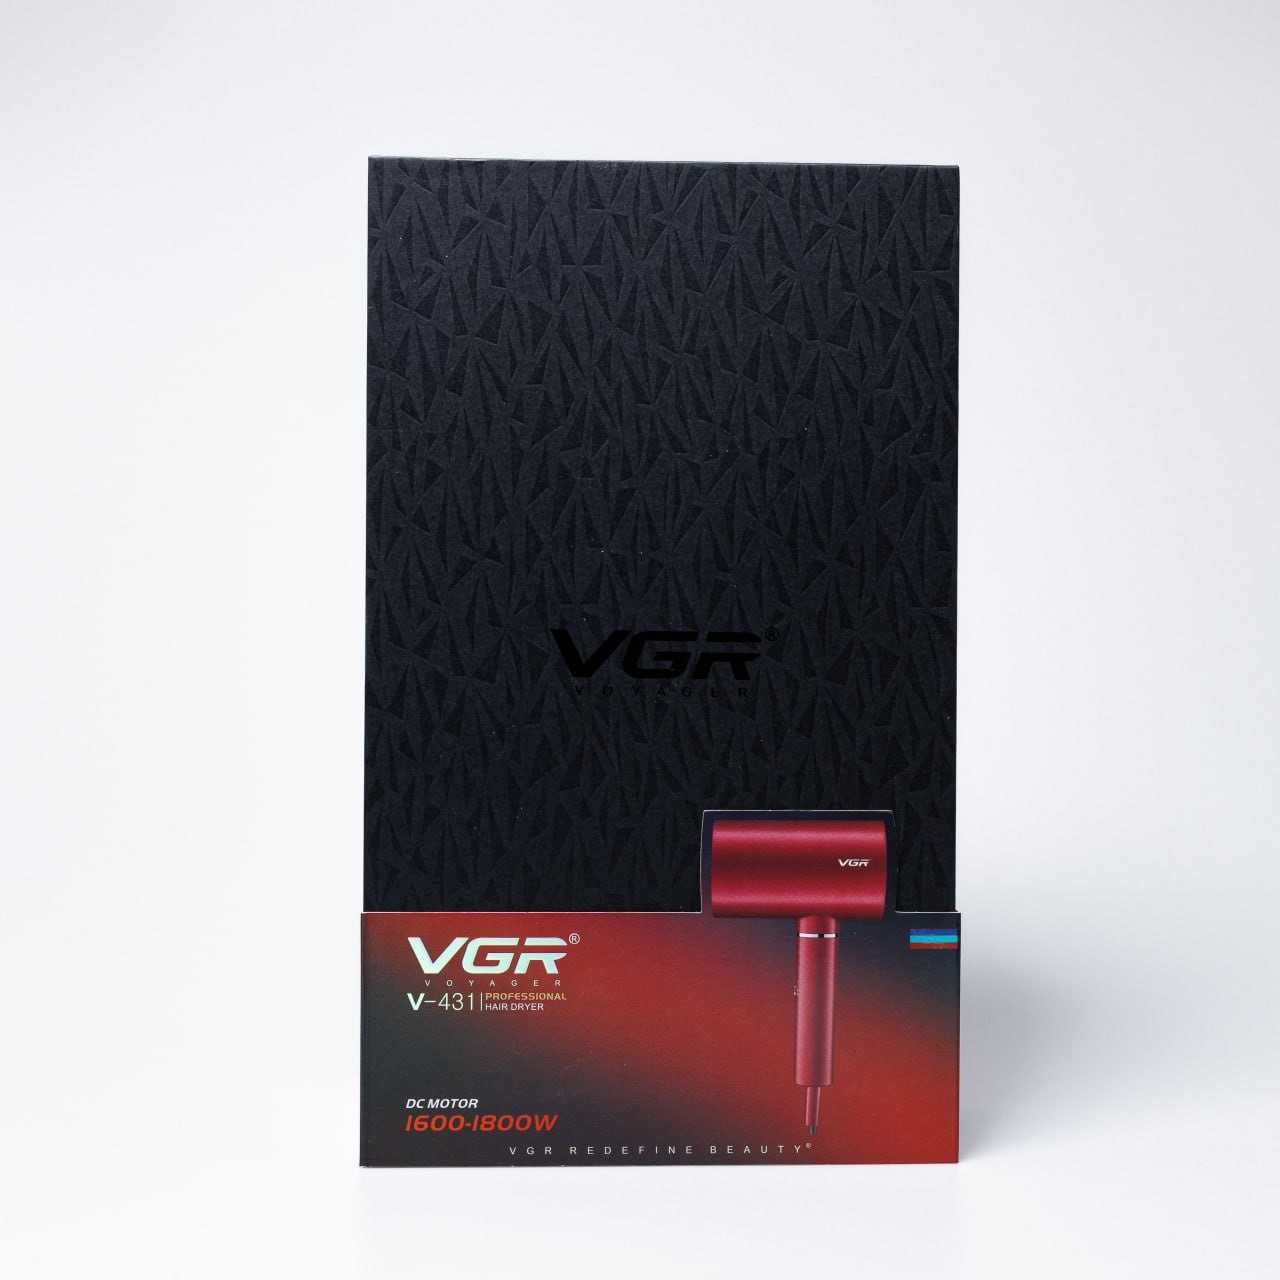 Професійний фен VGR Voyager V-431 DC Motor 1600-1800W